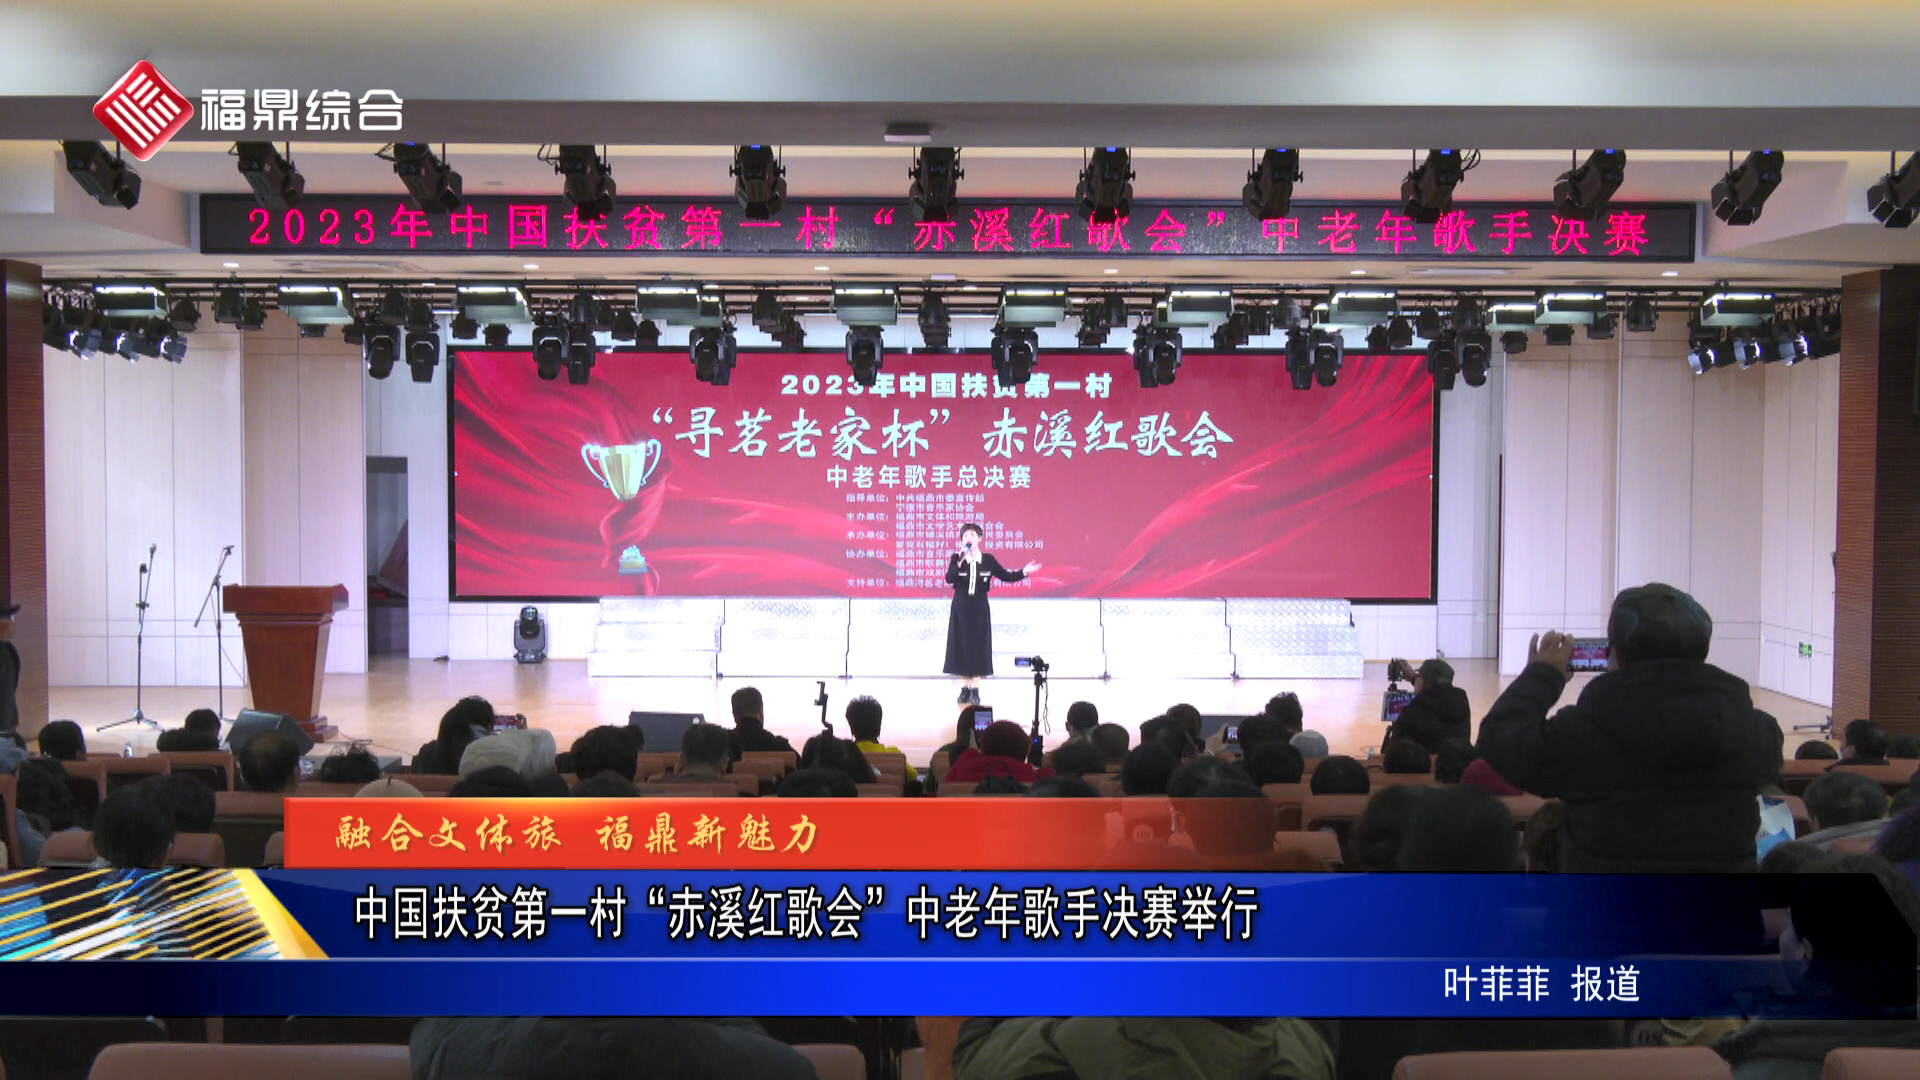 中国扶贫第一村“赤溪红歌会”中老年歌手决赛举行